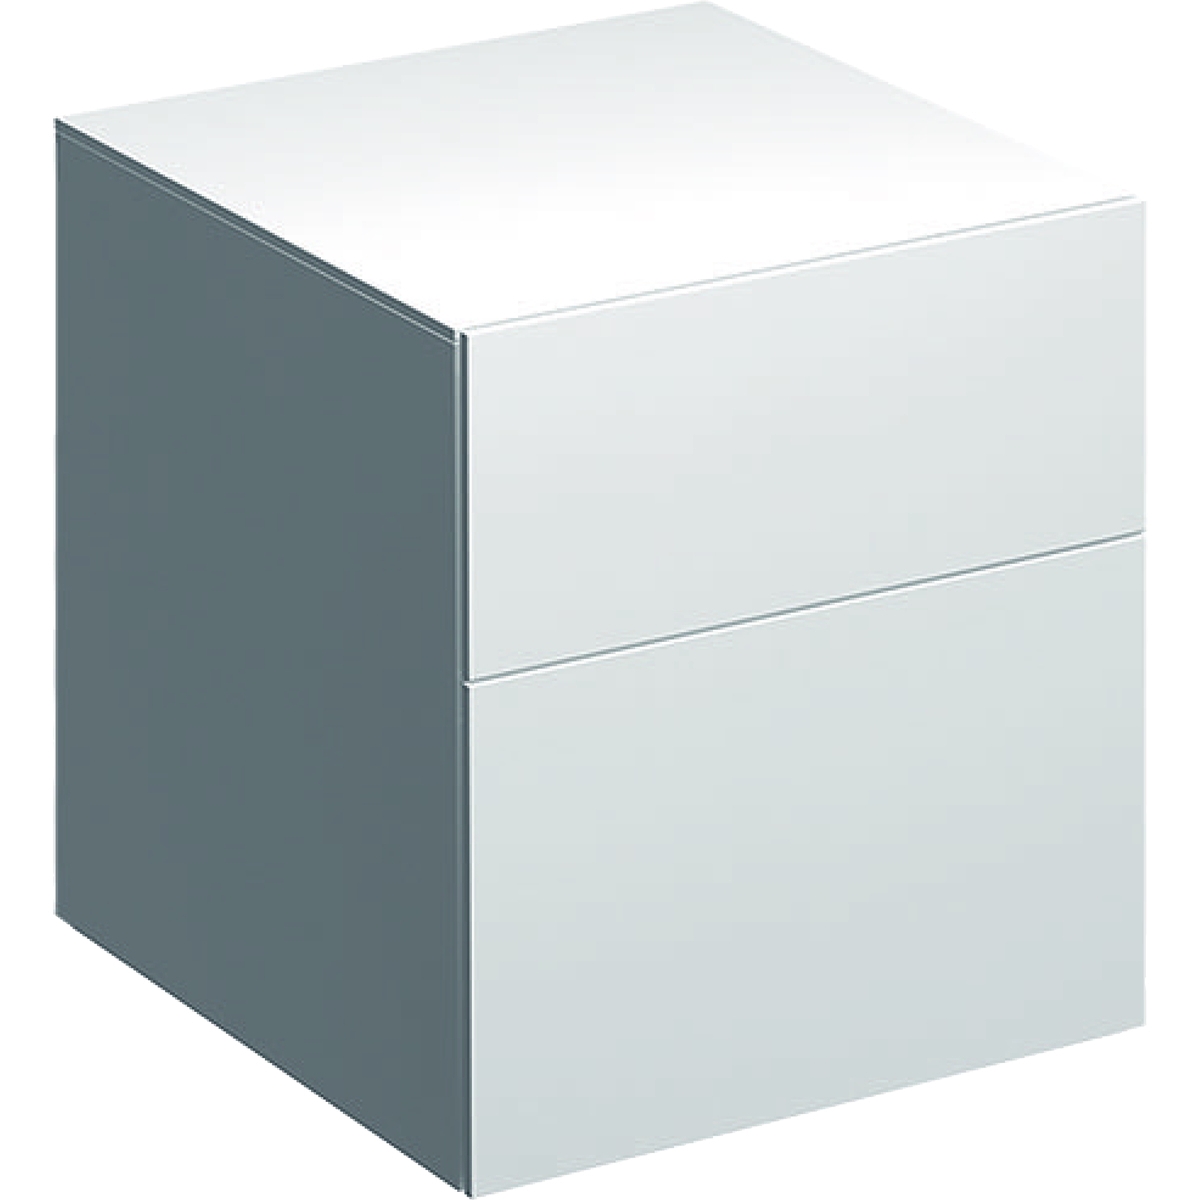 Dulap suspendat Geberit Xeno2 45×46.2x51cm cu doua sertare alb lucios Geberit imagine reduss.ro 2022